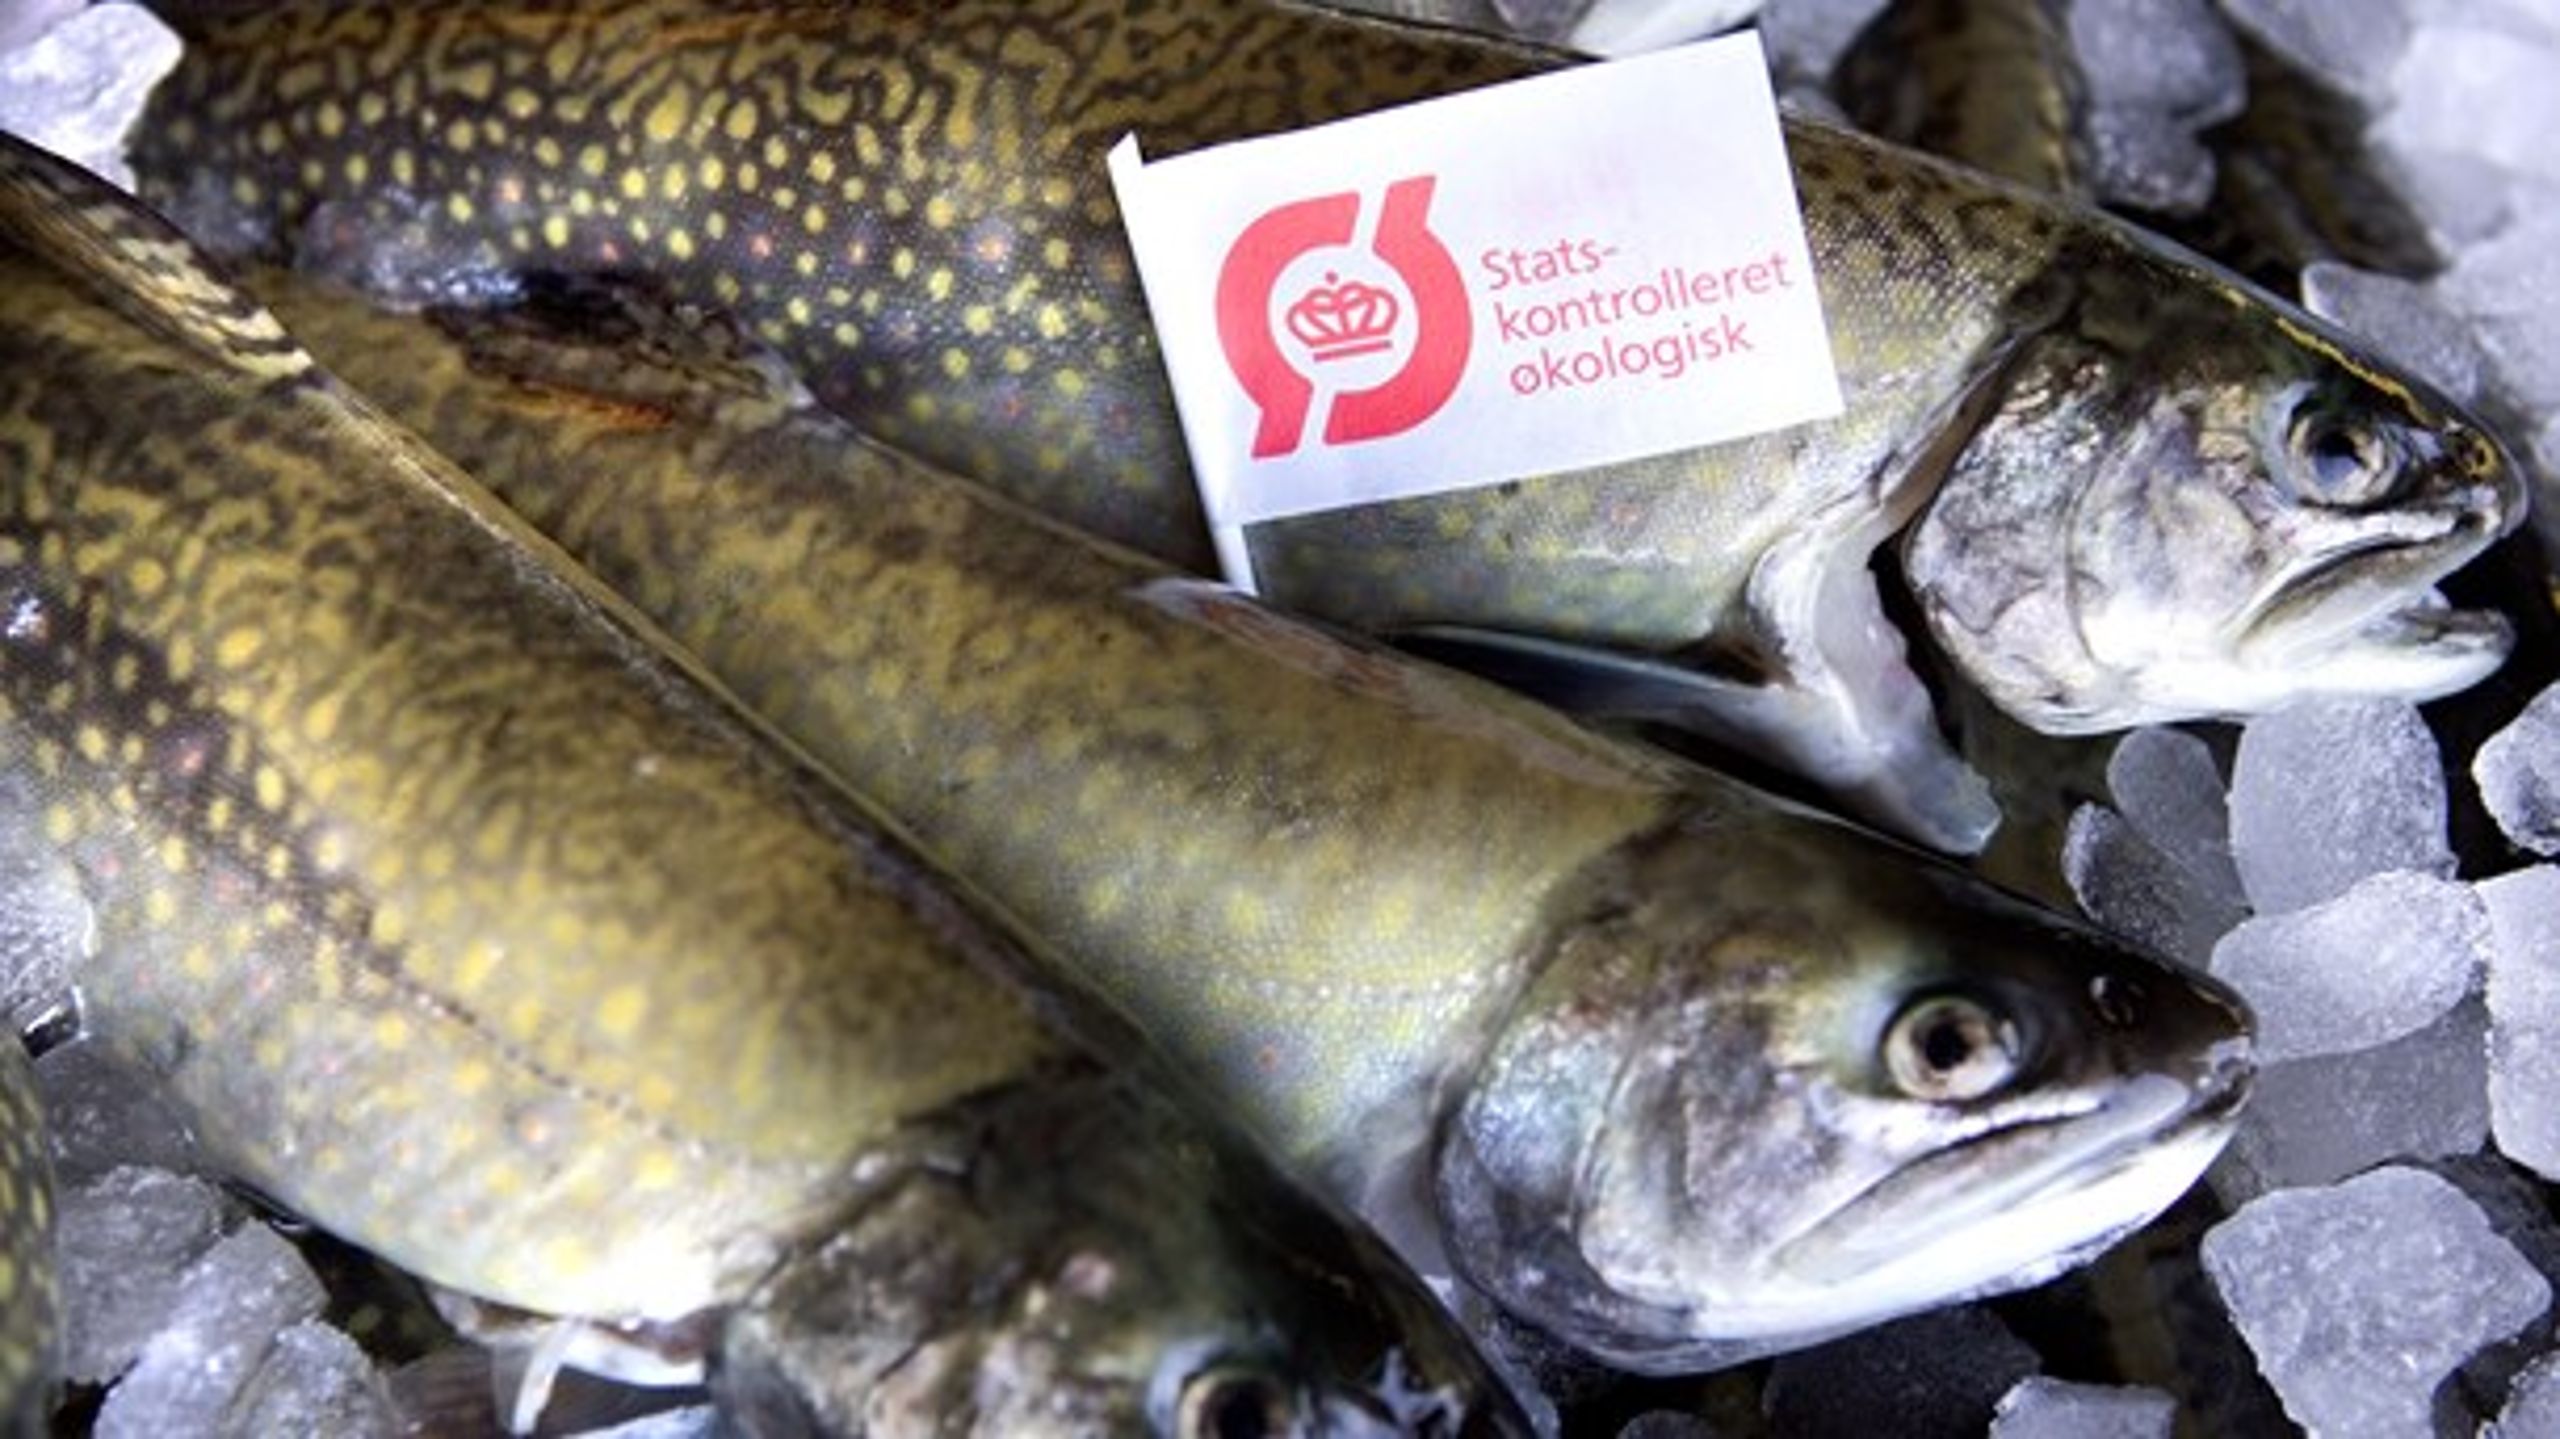 Den danske produktion af økologiske fisk er, på trods af stigende efterspørgsel, faldet fra 2015 til&nbsp;2019, skriver Dansk Akvakultur og L&amp;F.